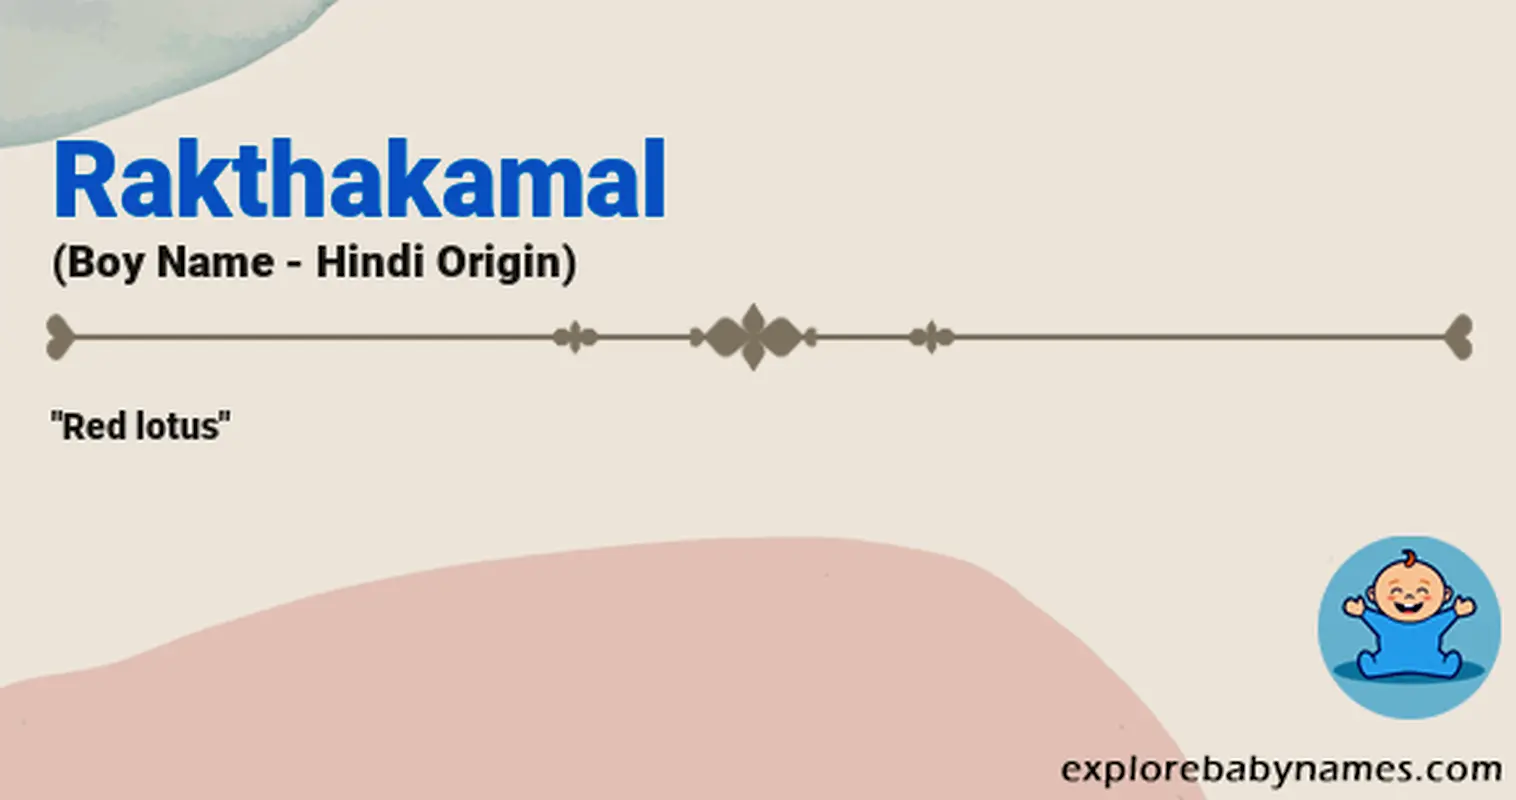 Meaning of Rakthakamal